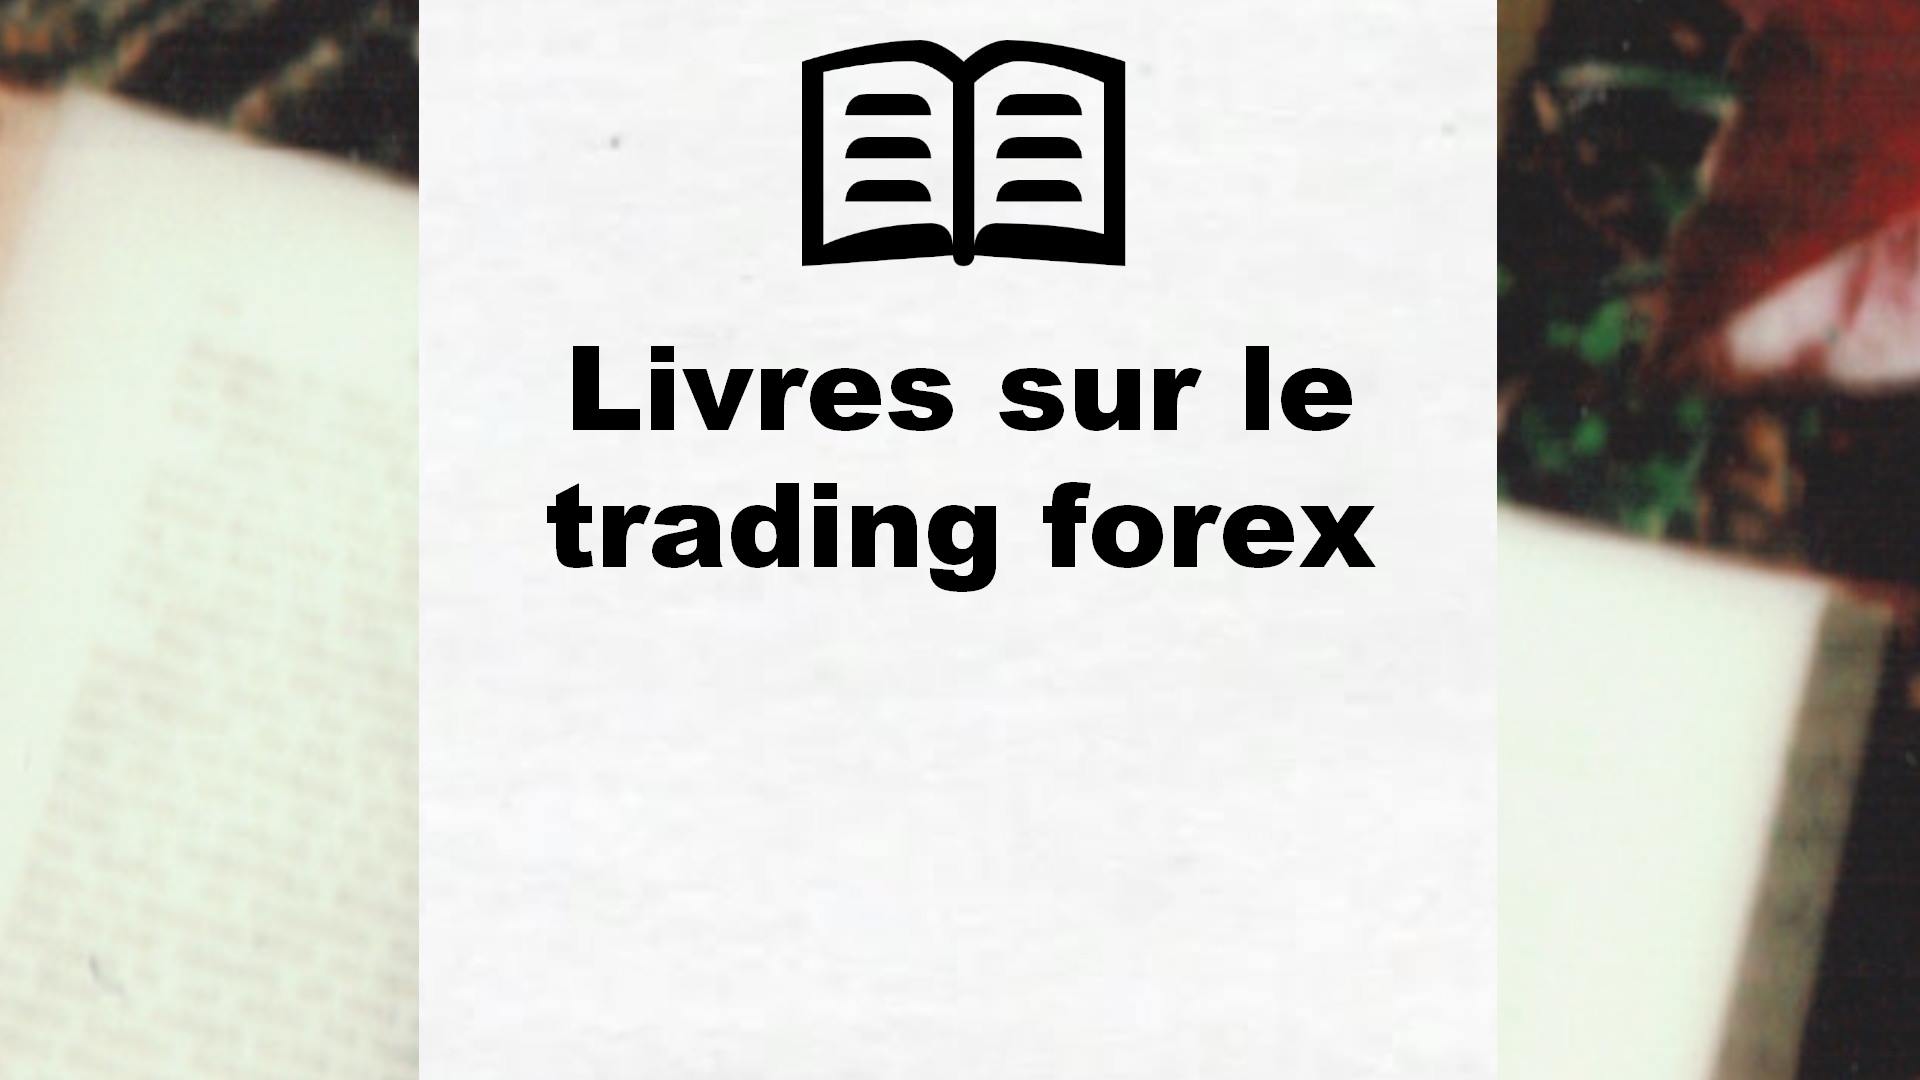 Livres sur le trading forex